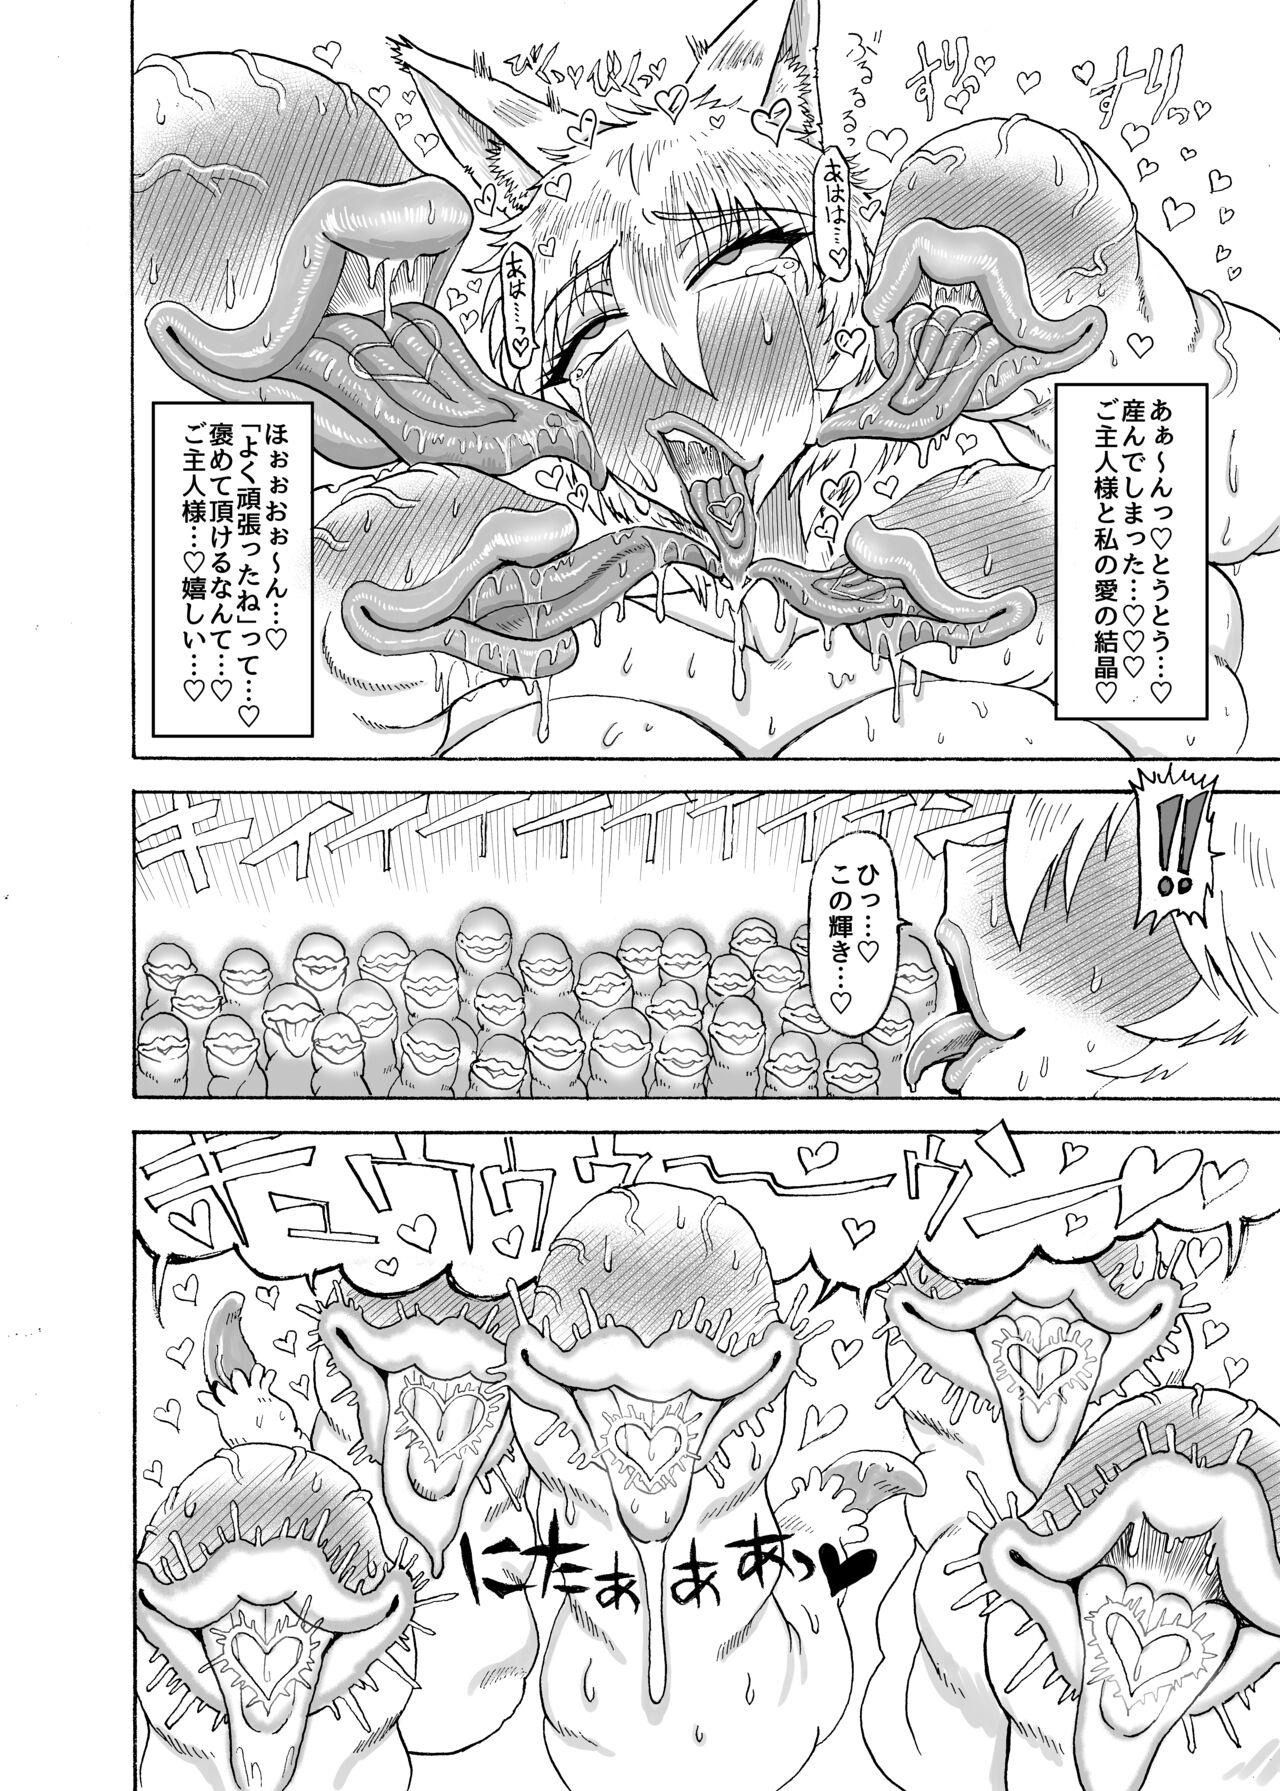 Yakumo Ran VS Semen sucking worm 26